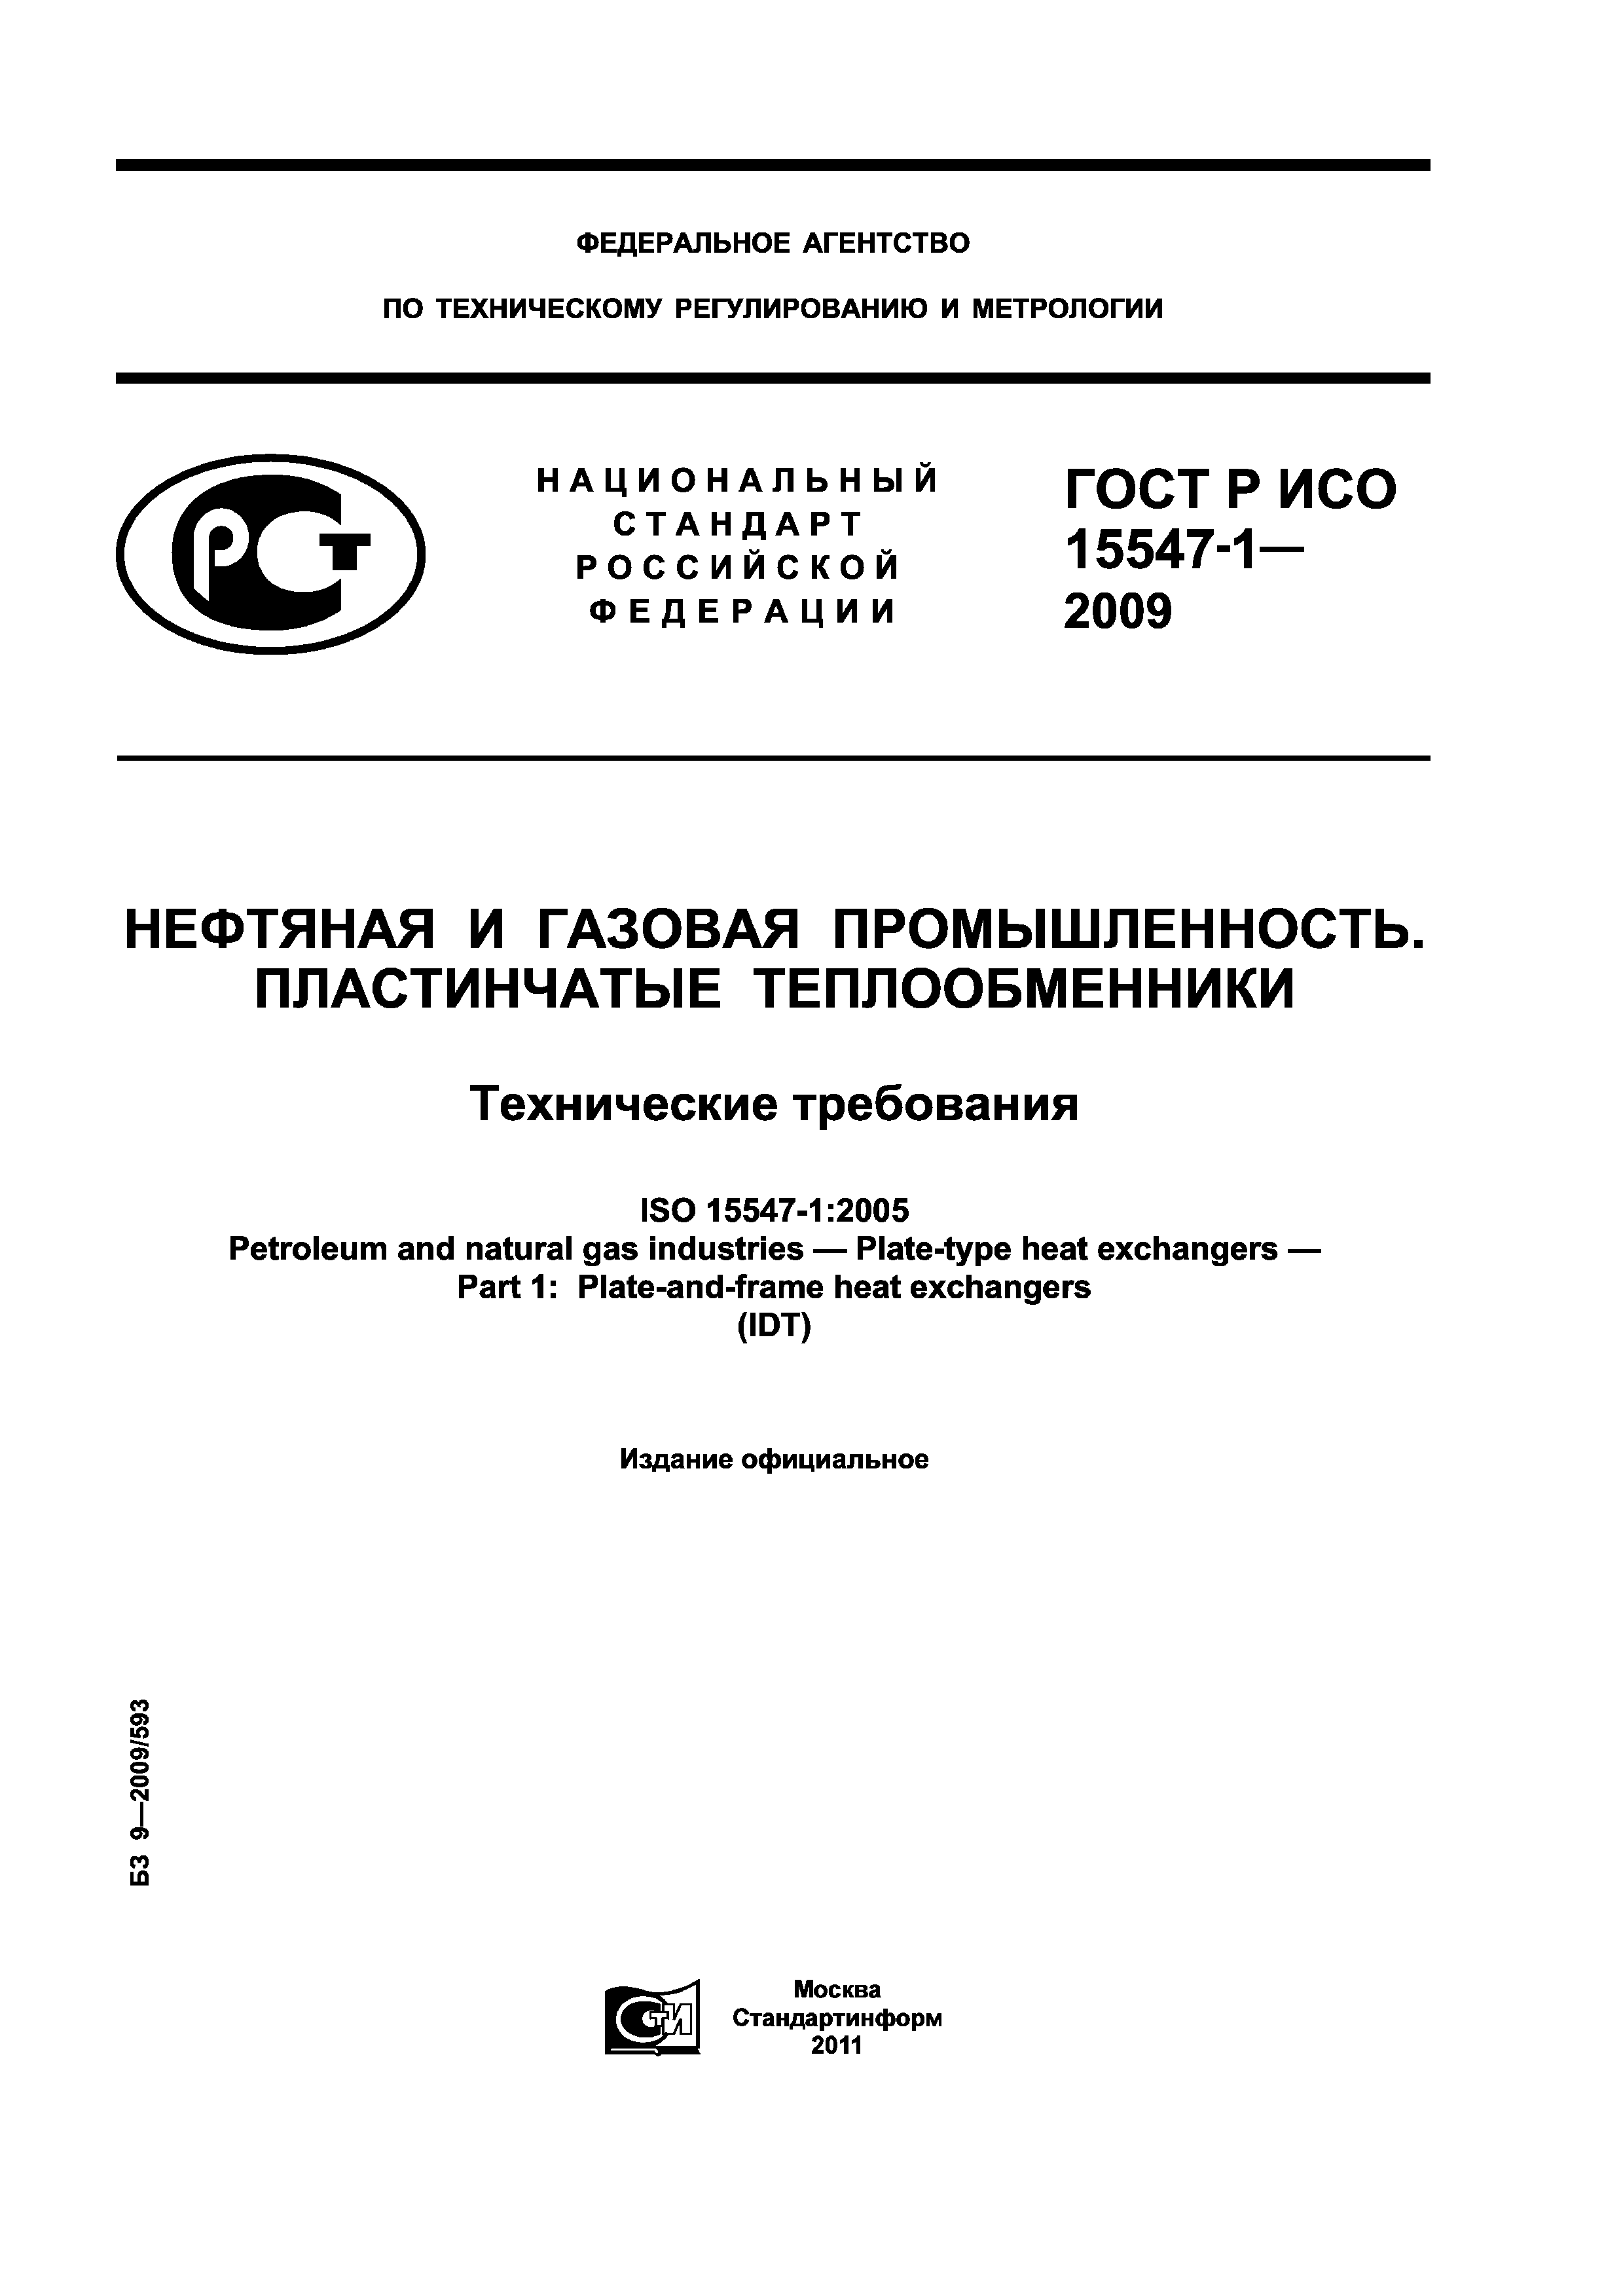 ГОСТ Р ИСО 15547-1-2009